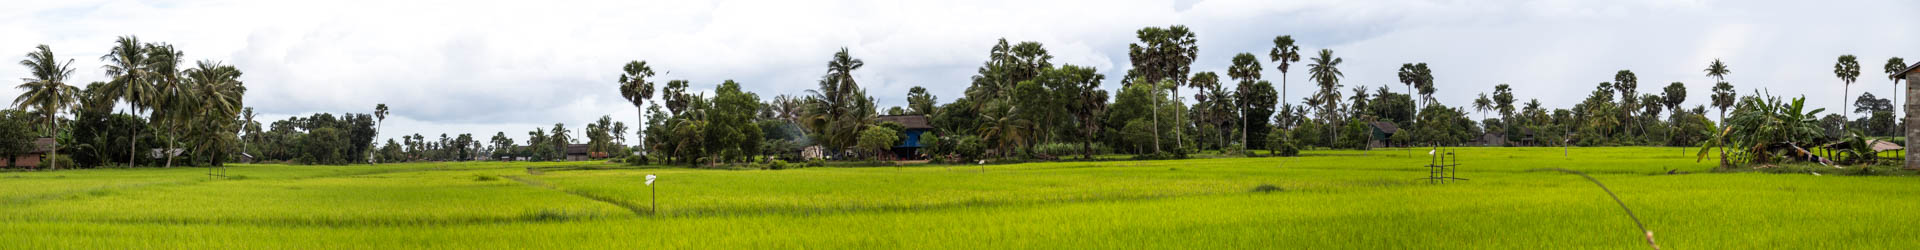 Reisplantagen in Kampot